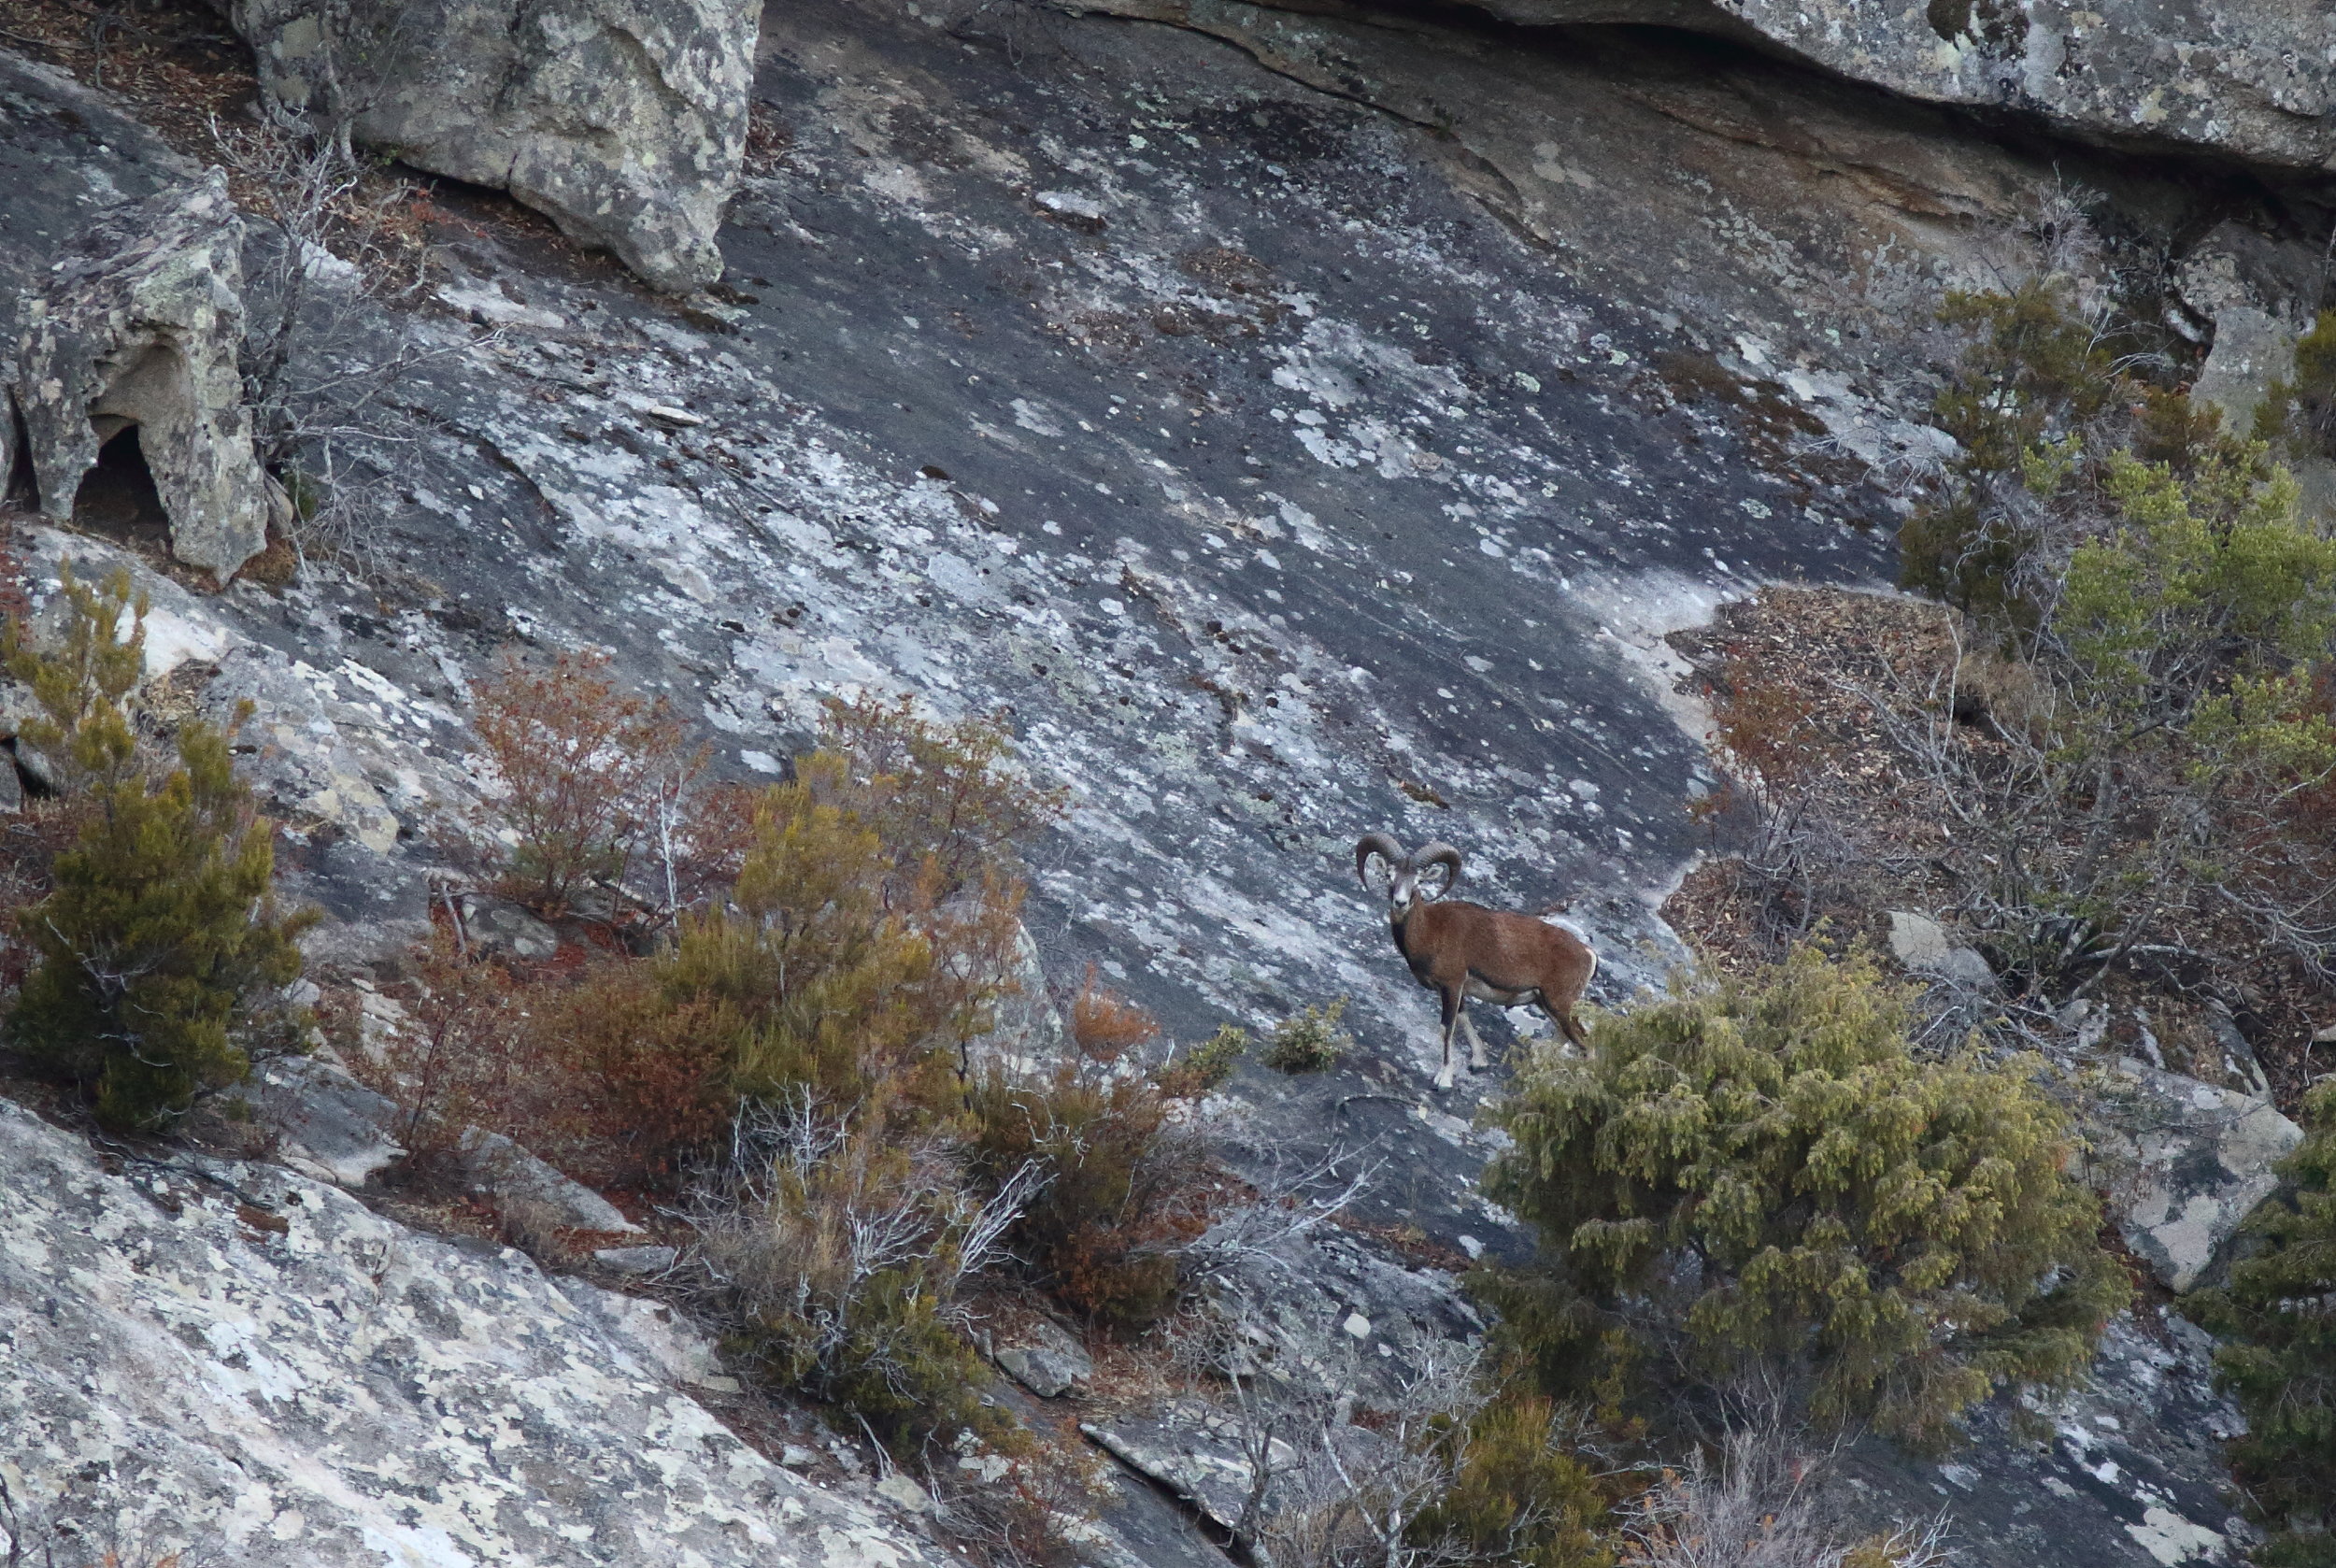 Mouflon de Corse sur les pentes du monte Capanne au-dessus de Colle d'Orano. La population de mouflons sur Elbe est estimee a plus de 500 animaux. 